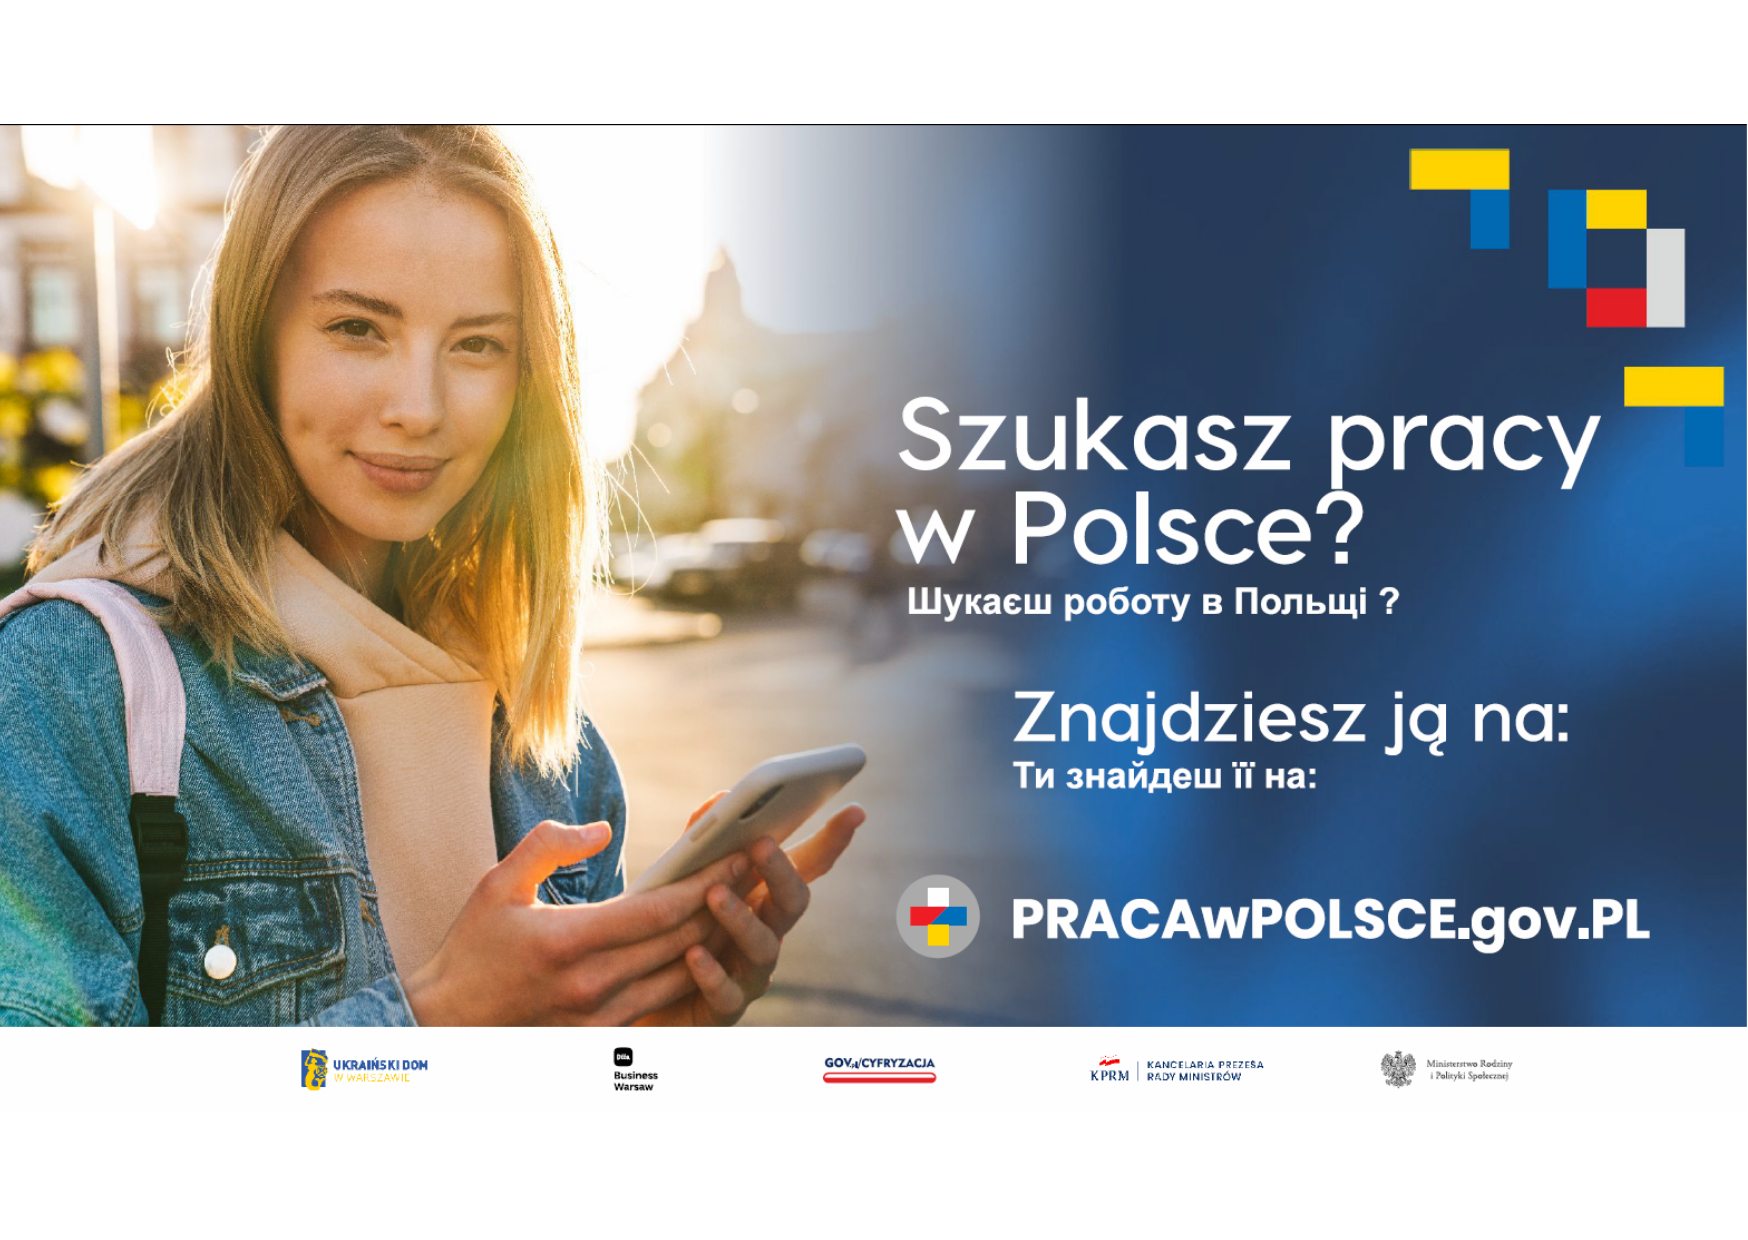 Ulotka promująca portal dla Obywateli Ukrainy pracawpolskie.gov.pl